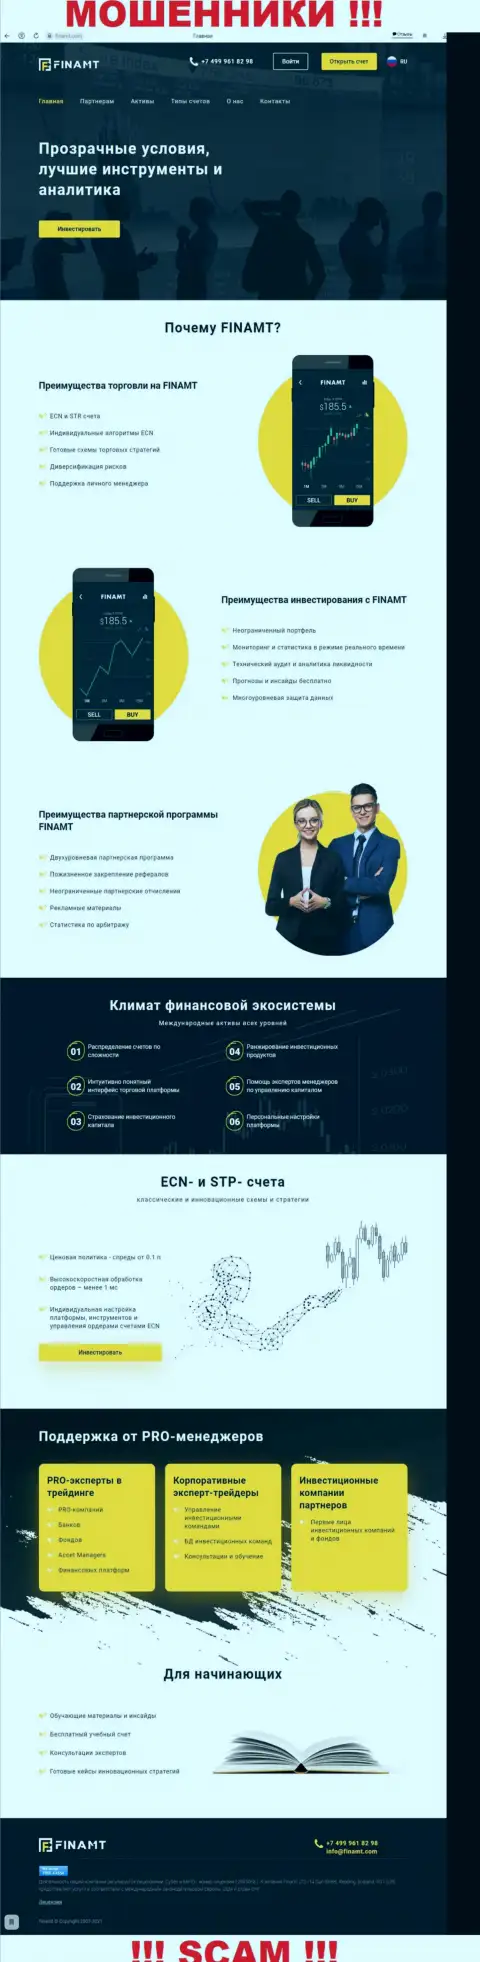 Информационный портал мошенников Finamt